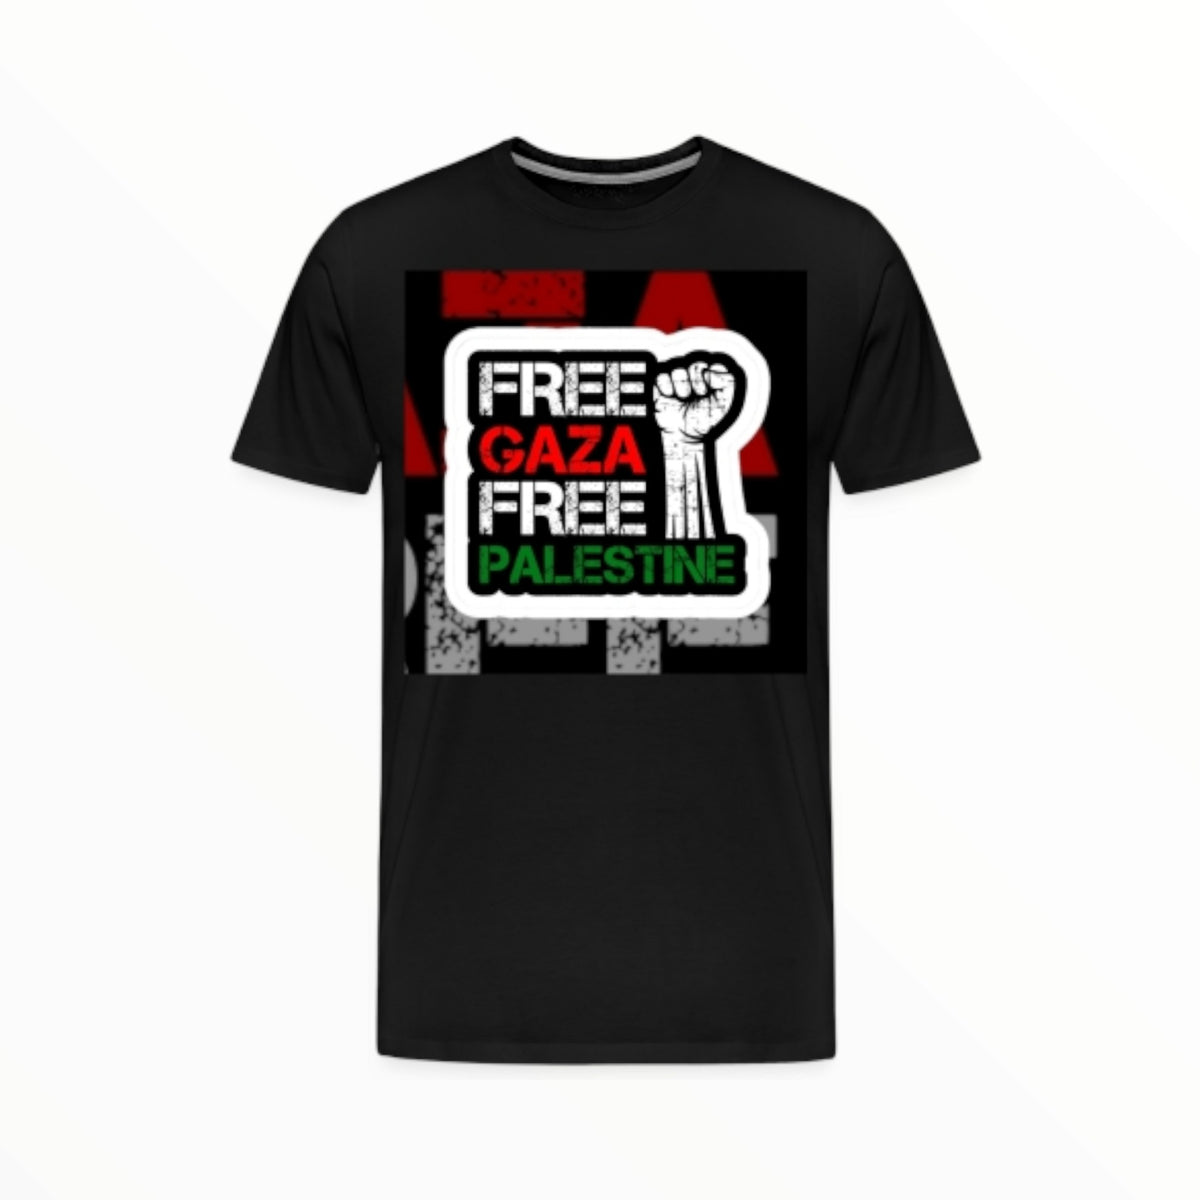 'Free Palestine' - T-shirts